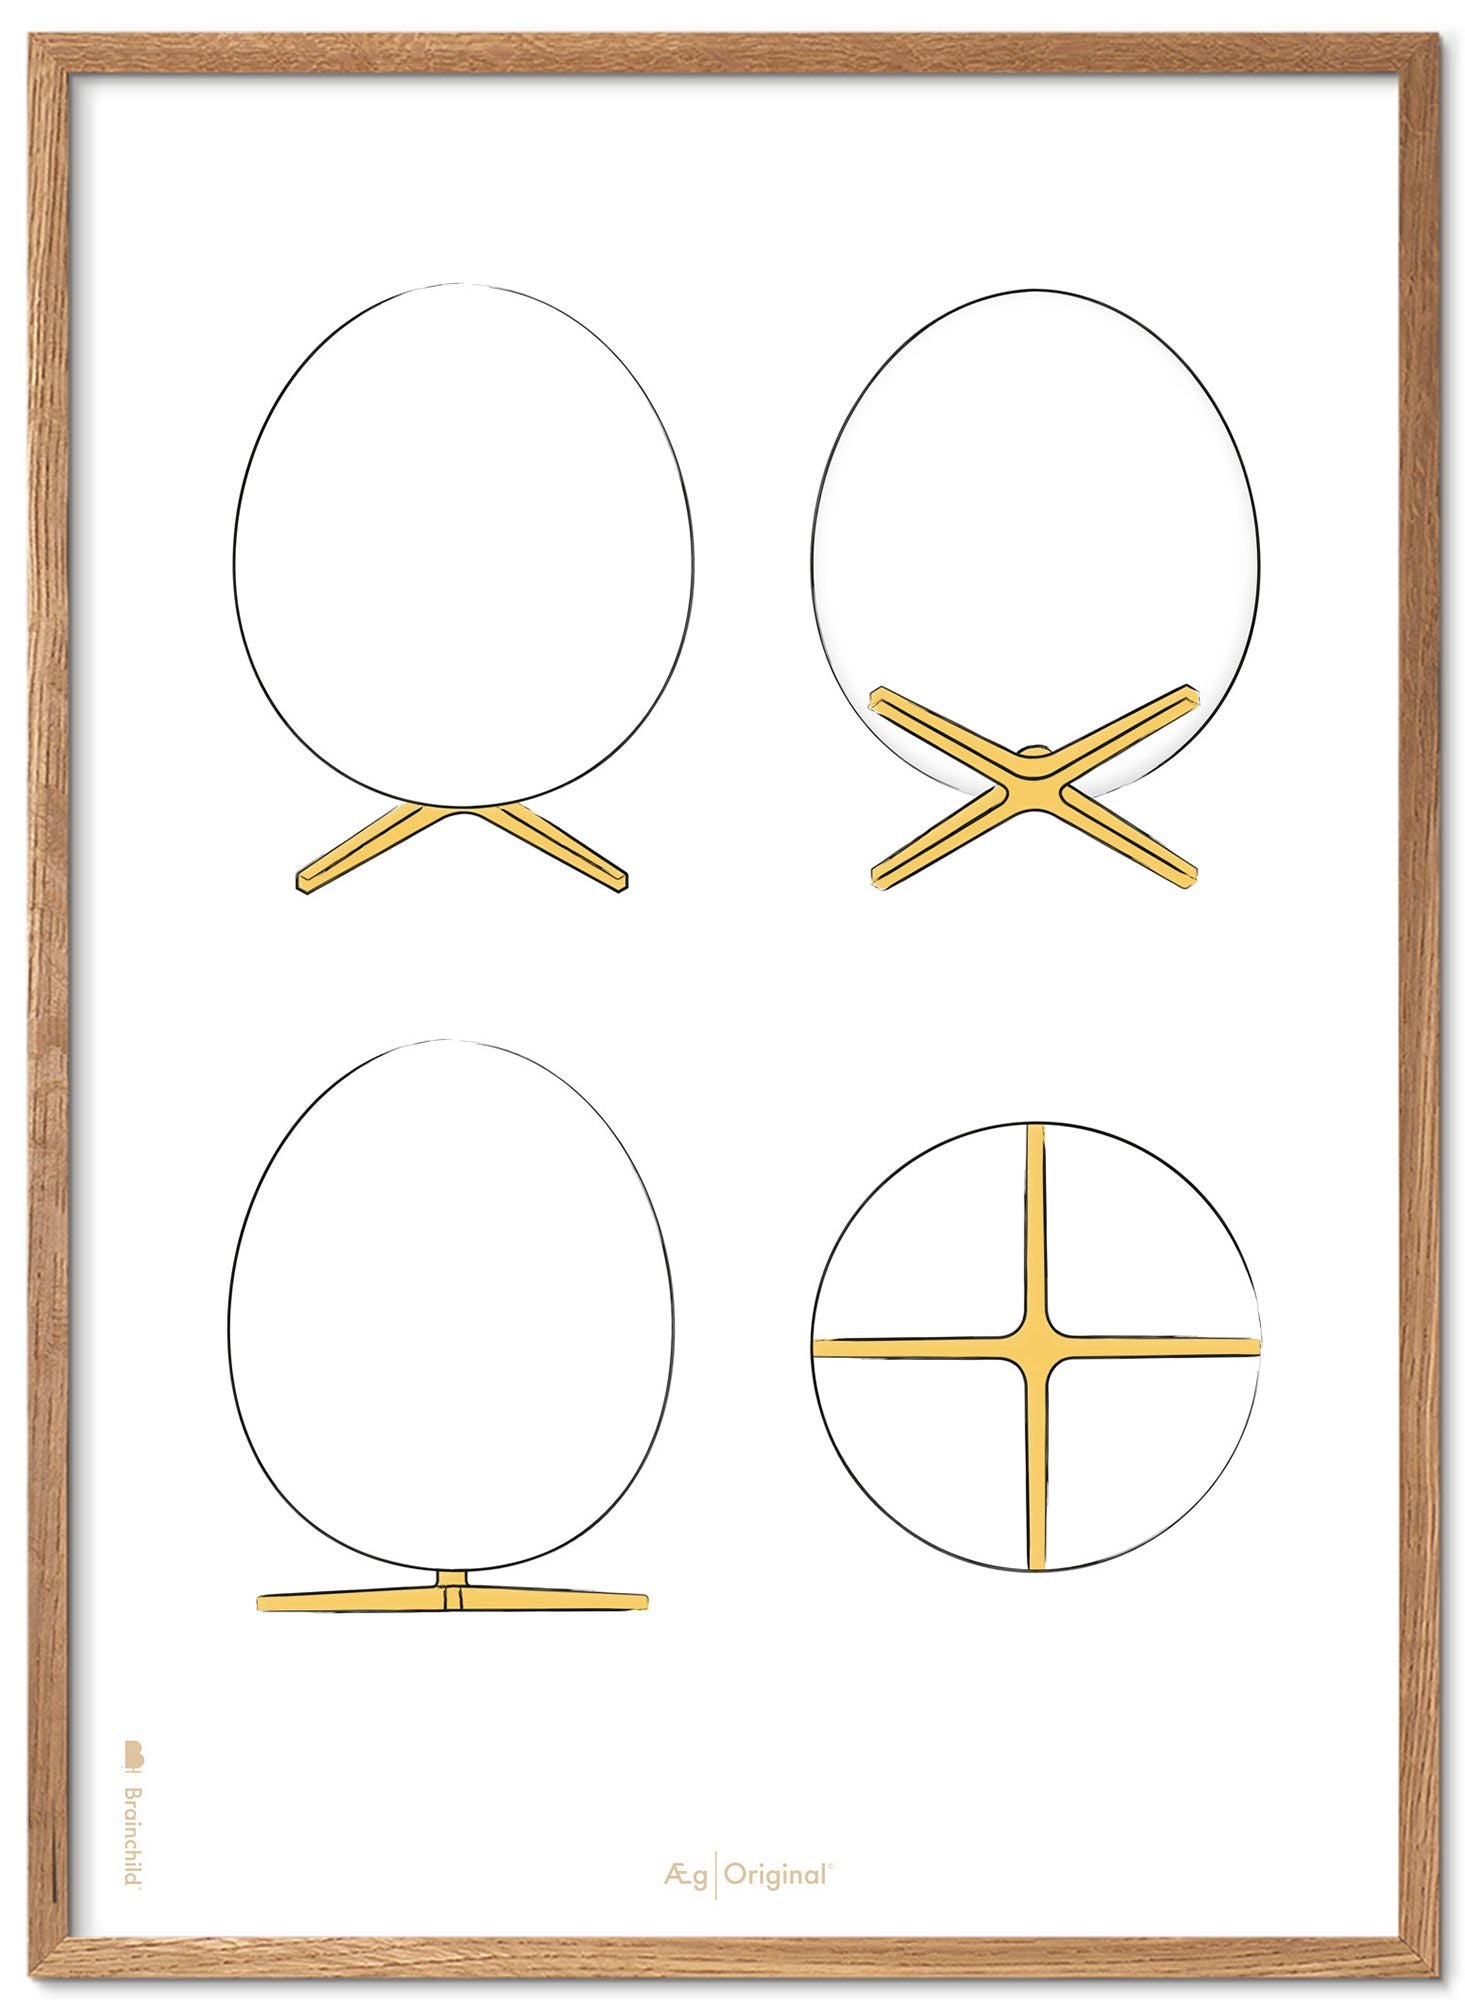 Brainchild the Egg Design Sketches Poster Frame in legno chiaro A5, sfondo bianco